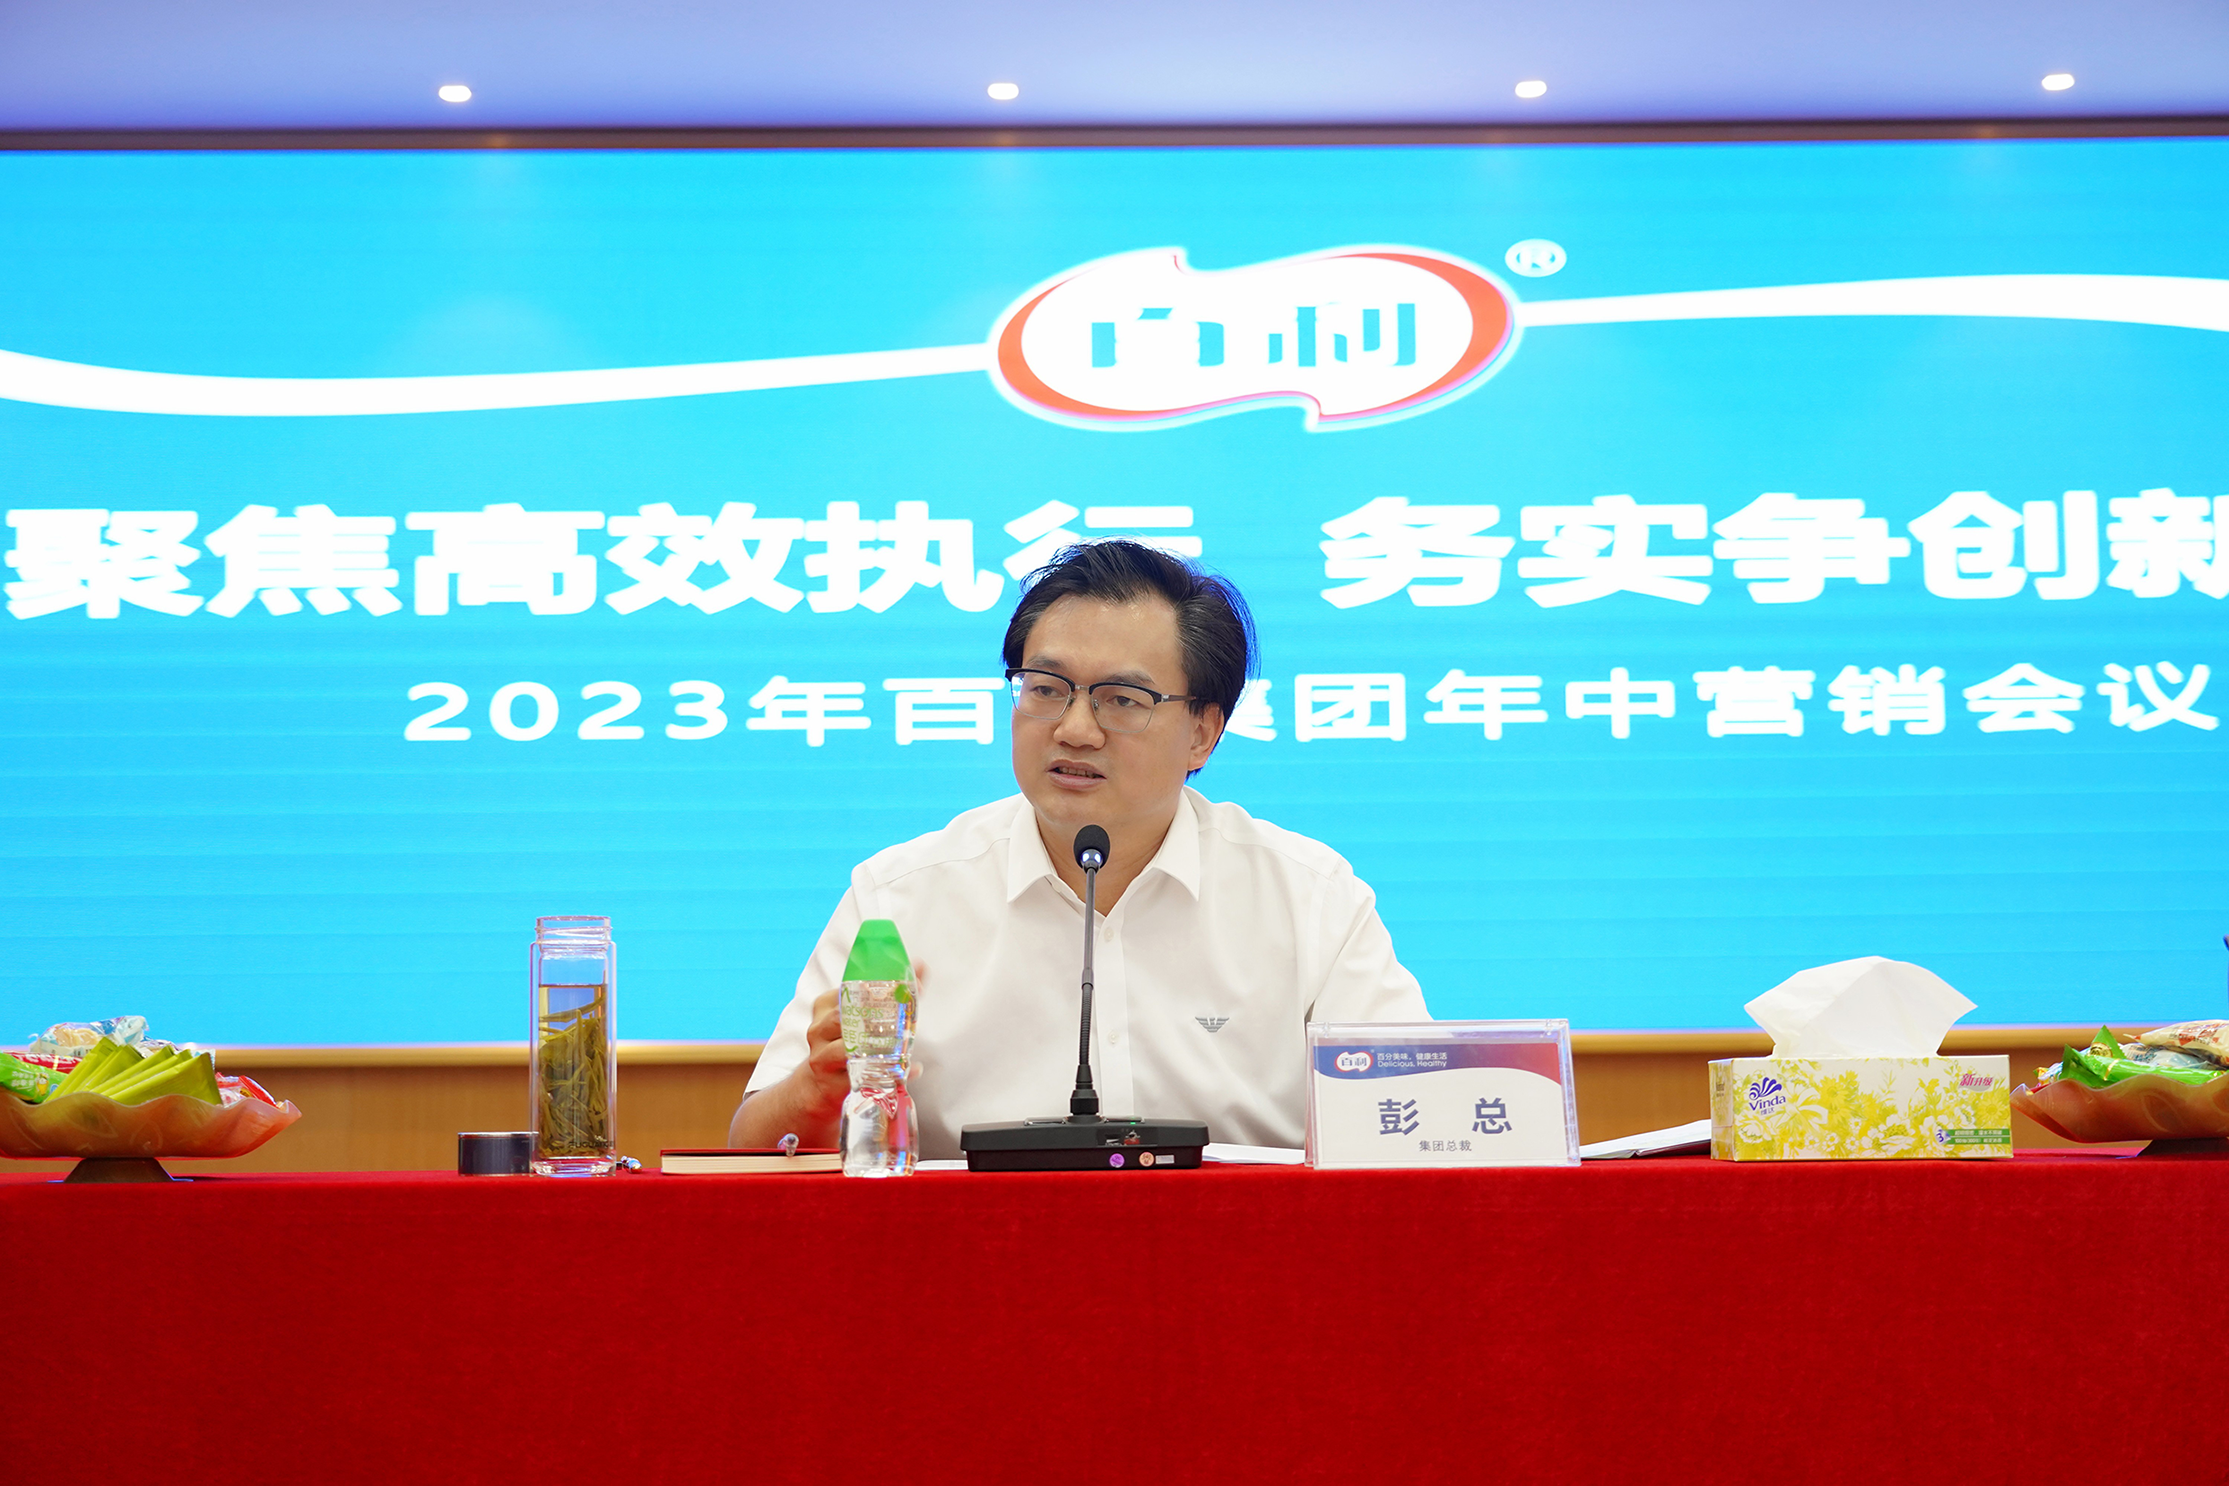 “聚焦高效执行 务实争创新高” | 分宜县集团2023年中营销会议成功召开